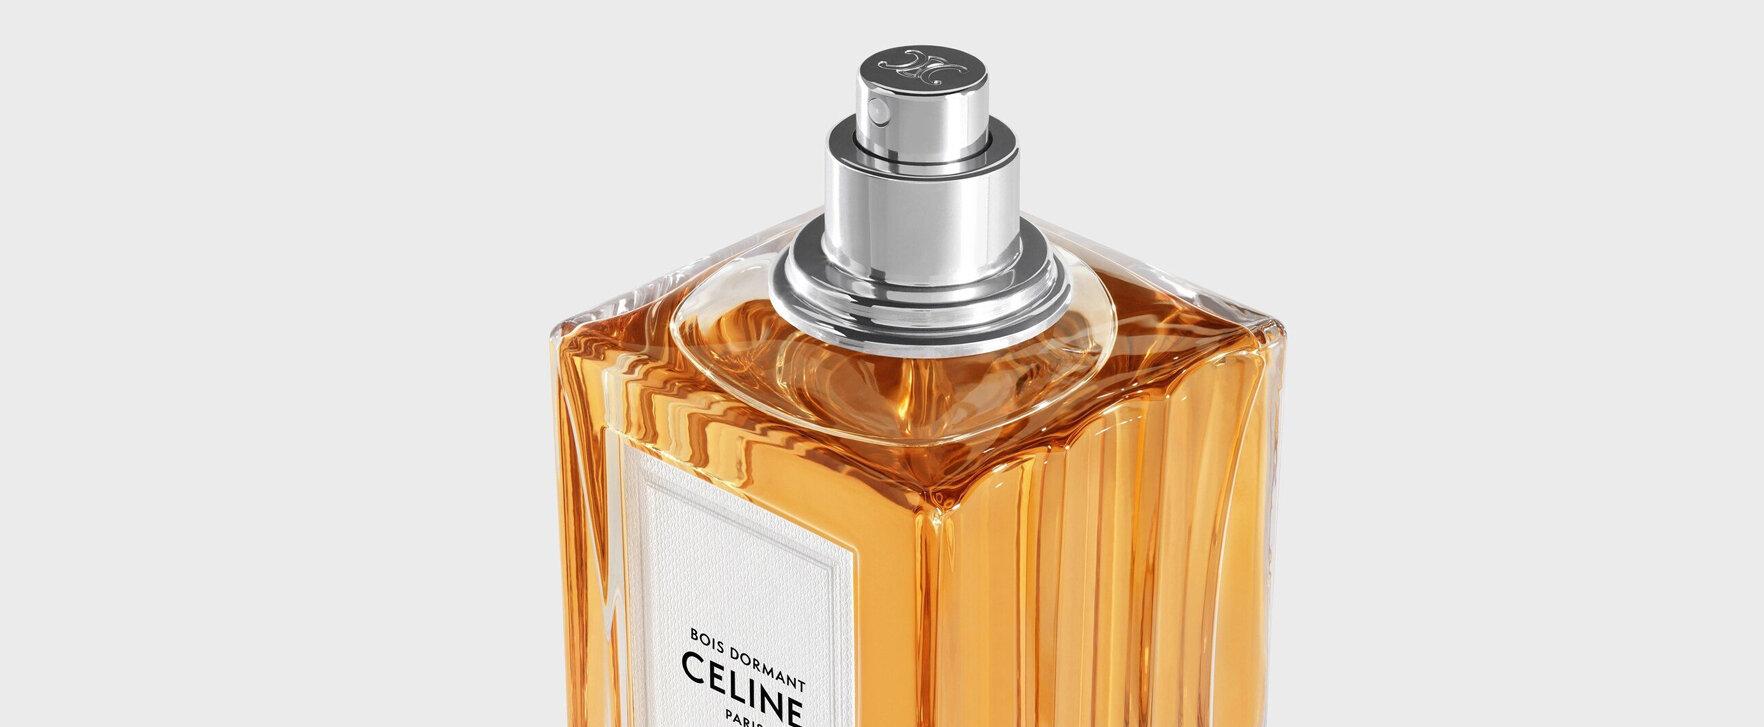 Celine lanciert neues Parfum „Bois Dormant“